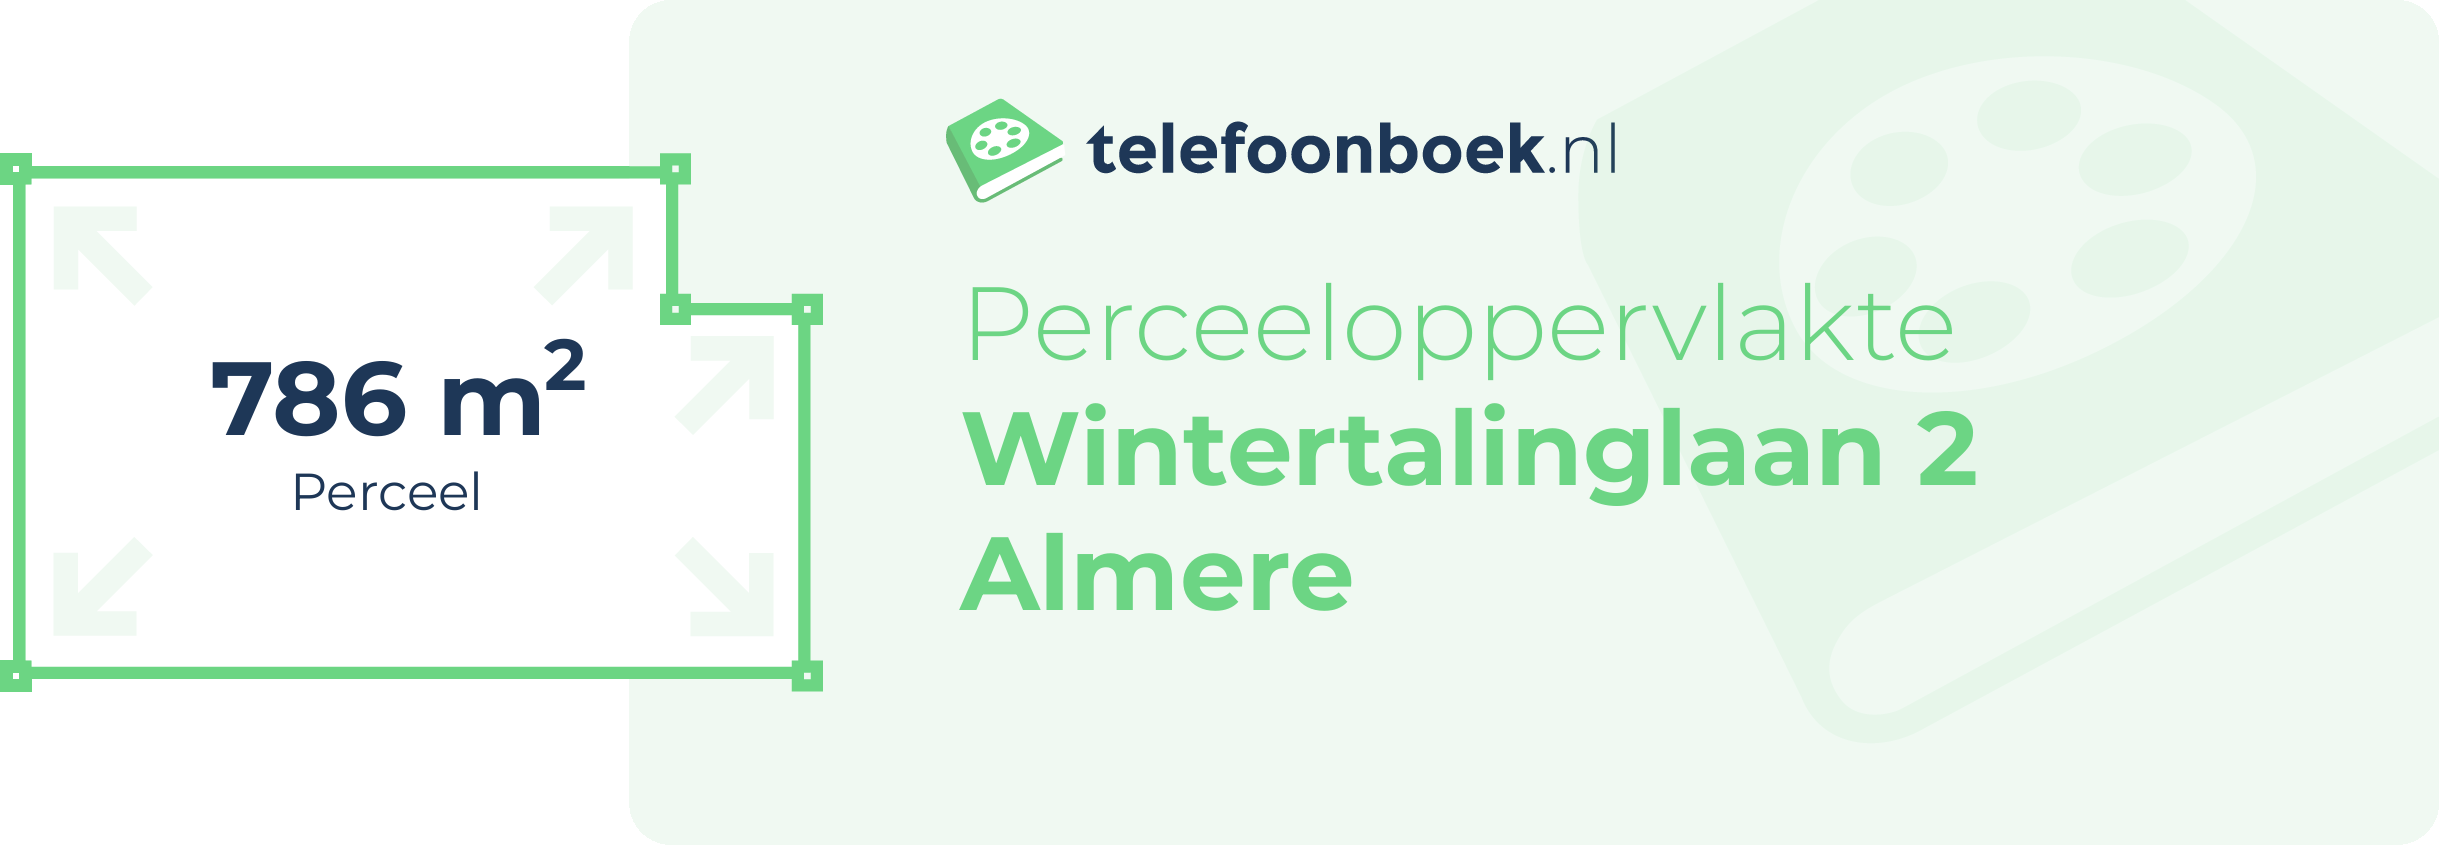 Perceeloppervlakte Wintertalinglaan 2 Almere